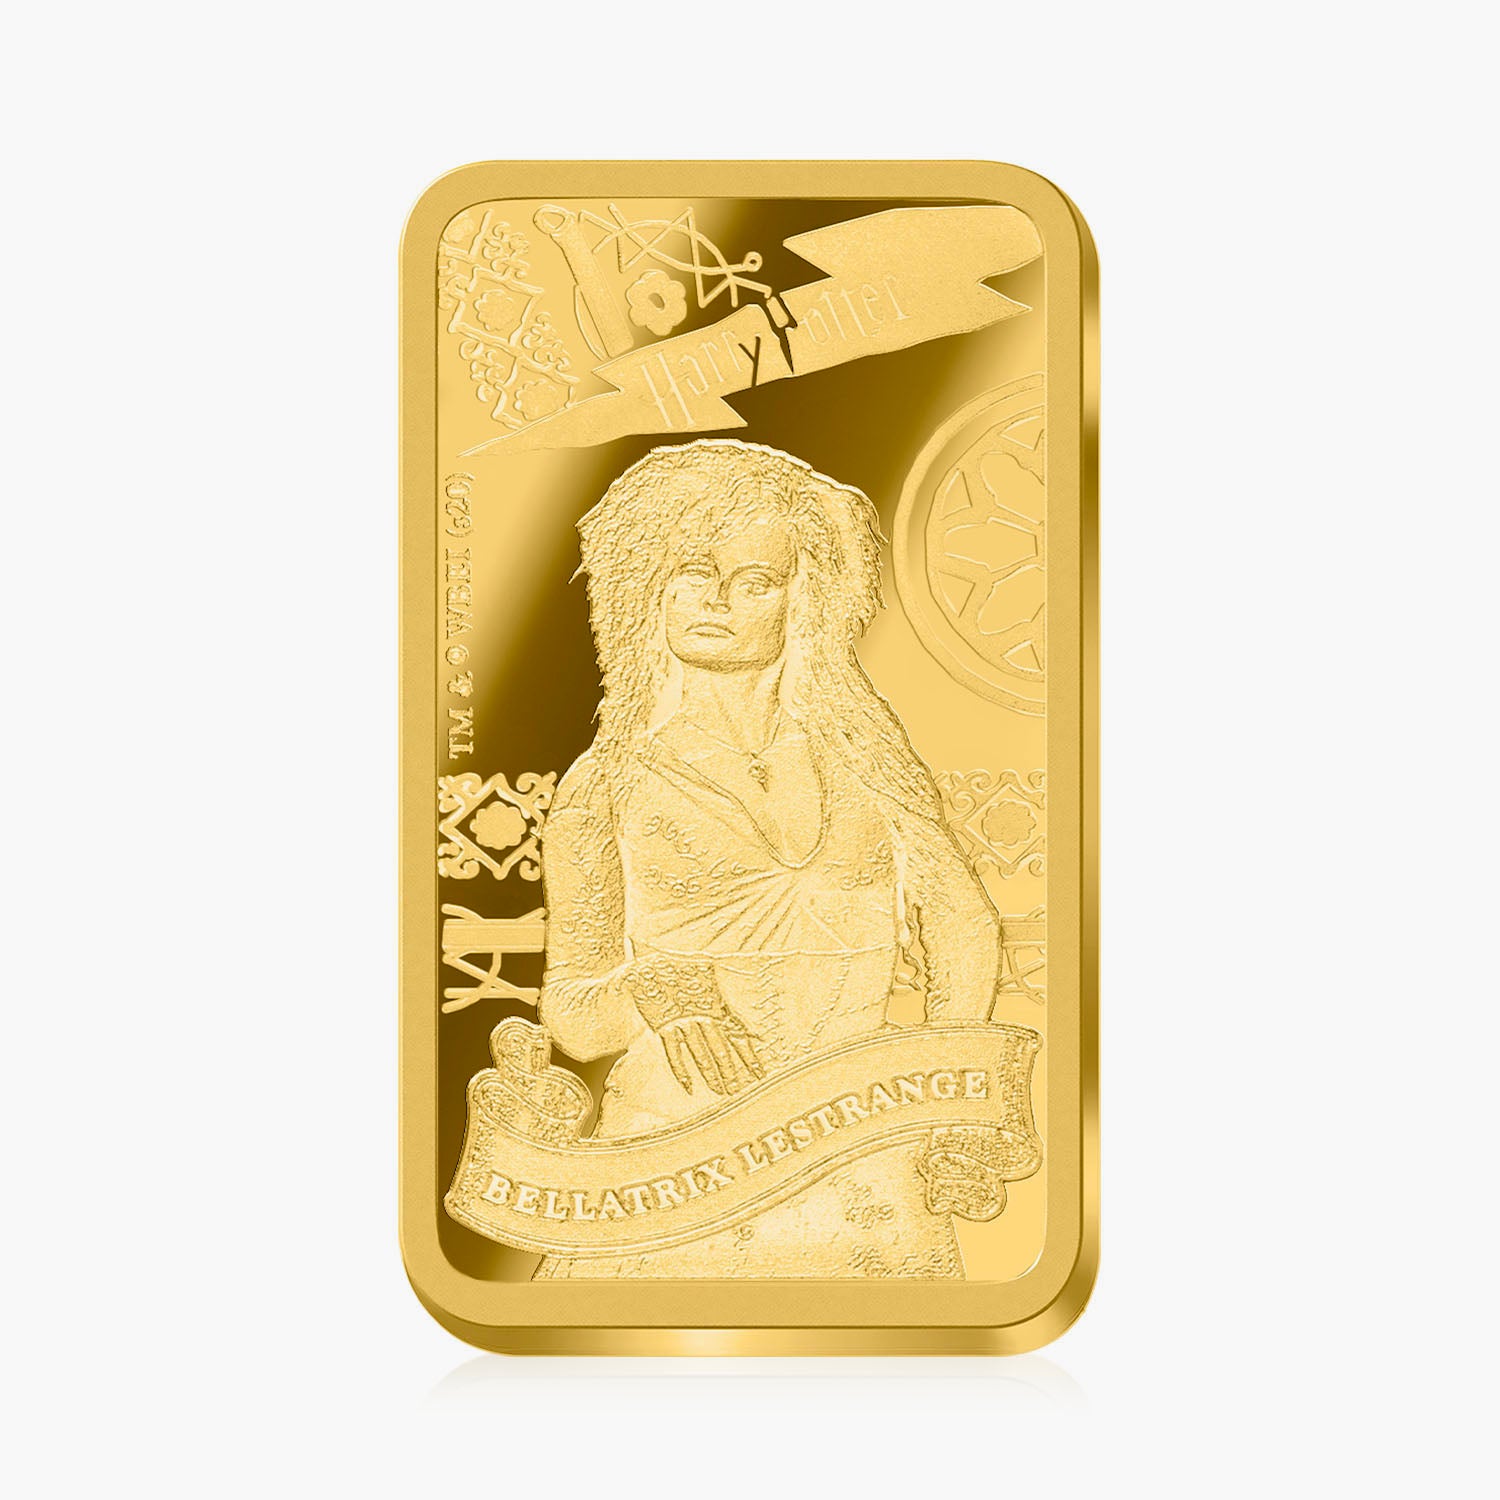 Harry Potter Lestrange Solid Gold Coin